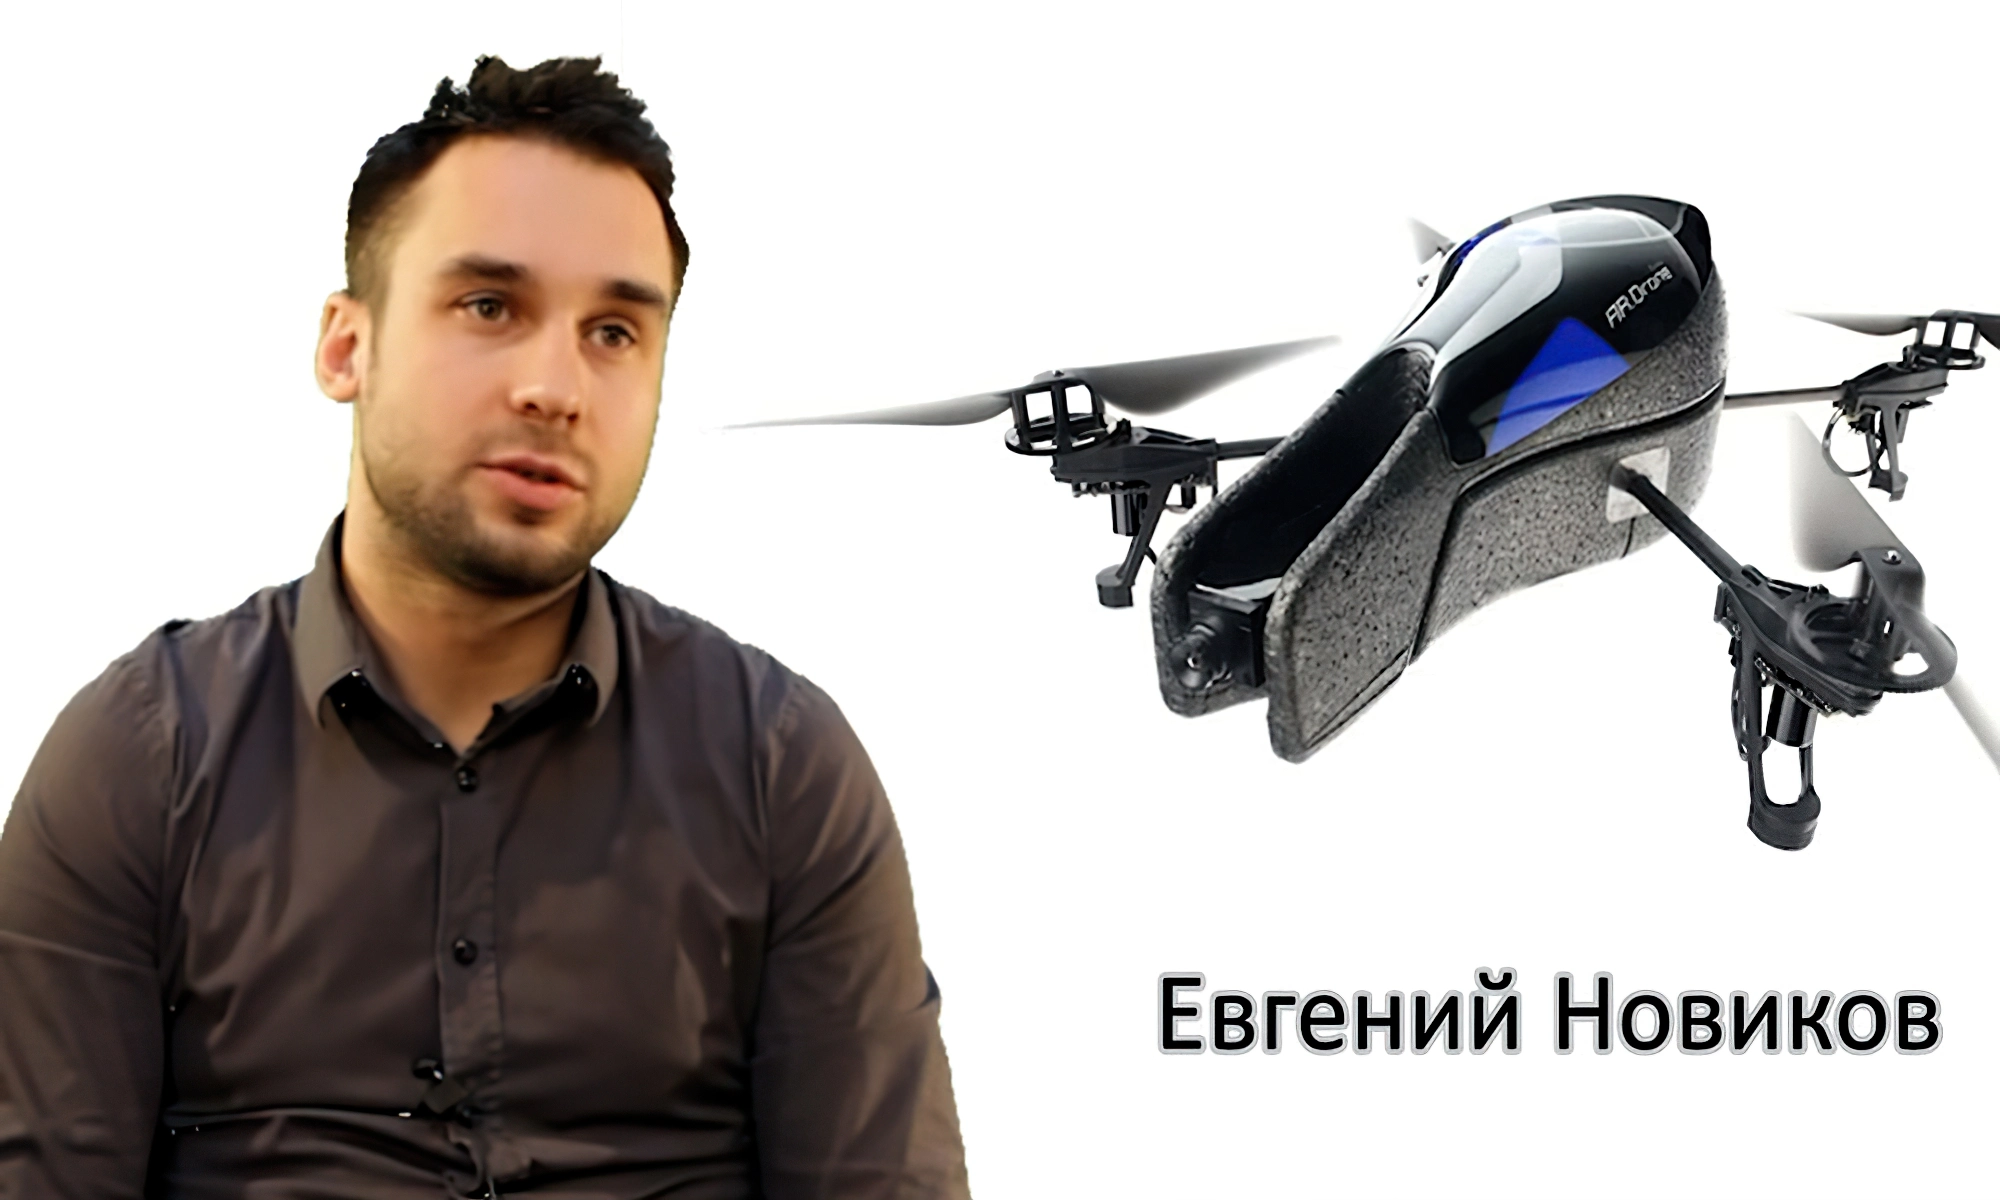 Евгений Новиков - совладелец интернет-магазина игрушечных вертолётов «Mydrone»